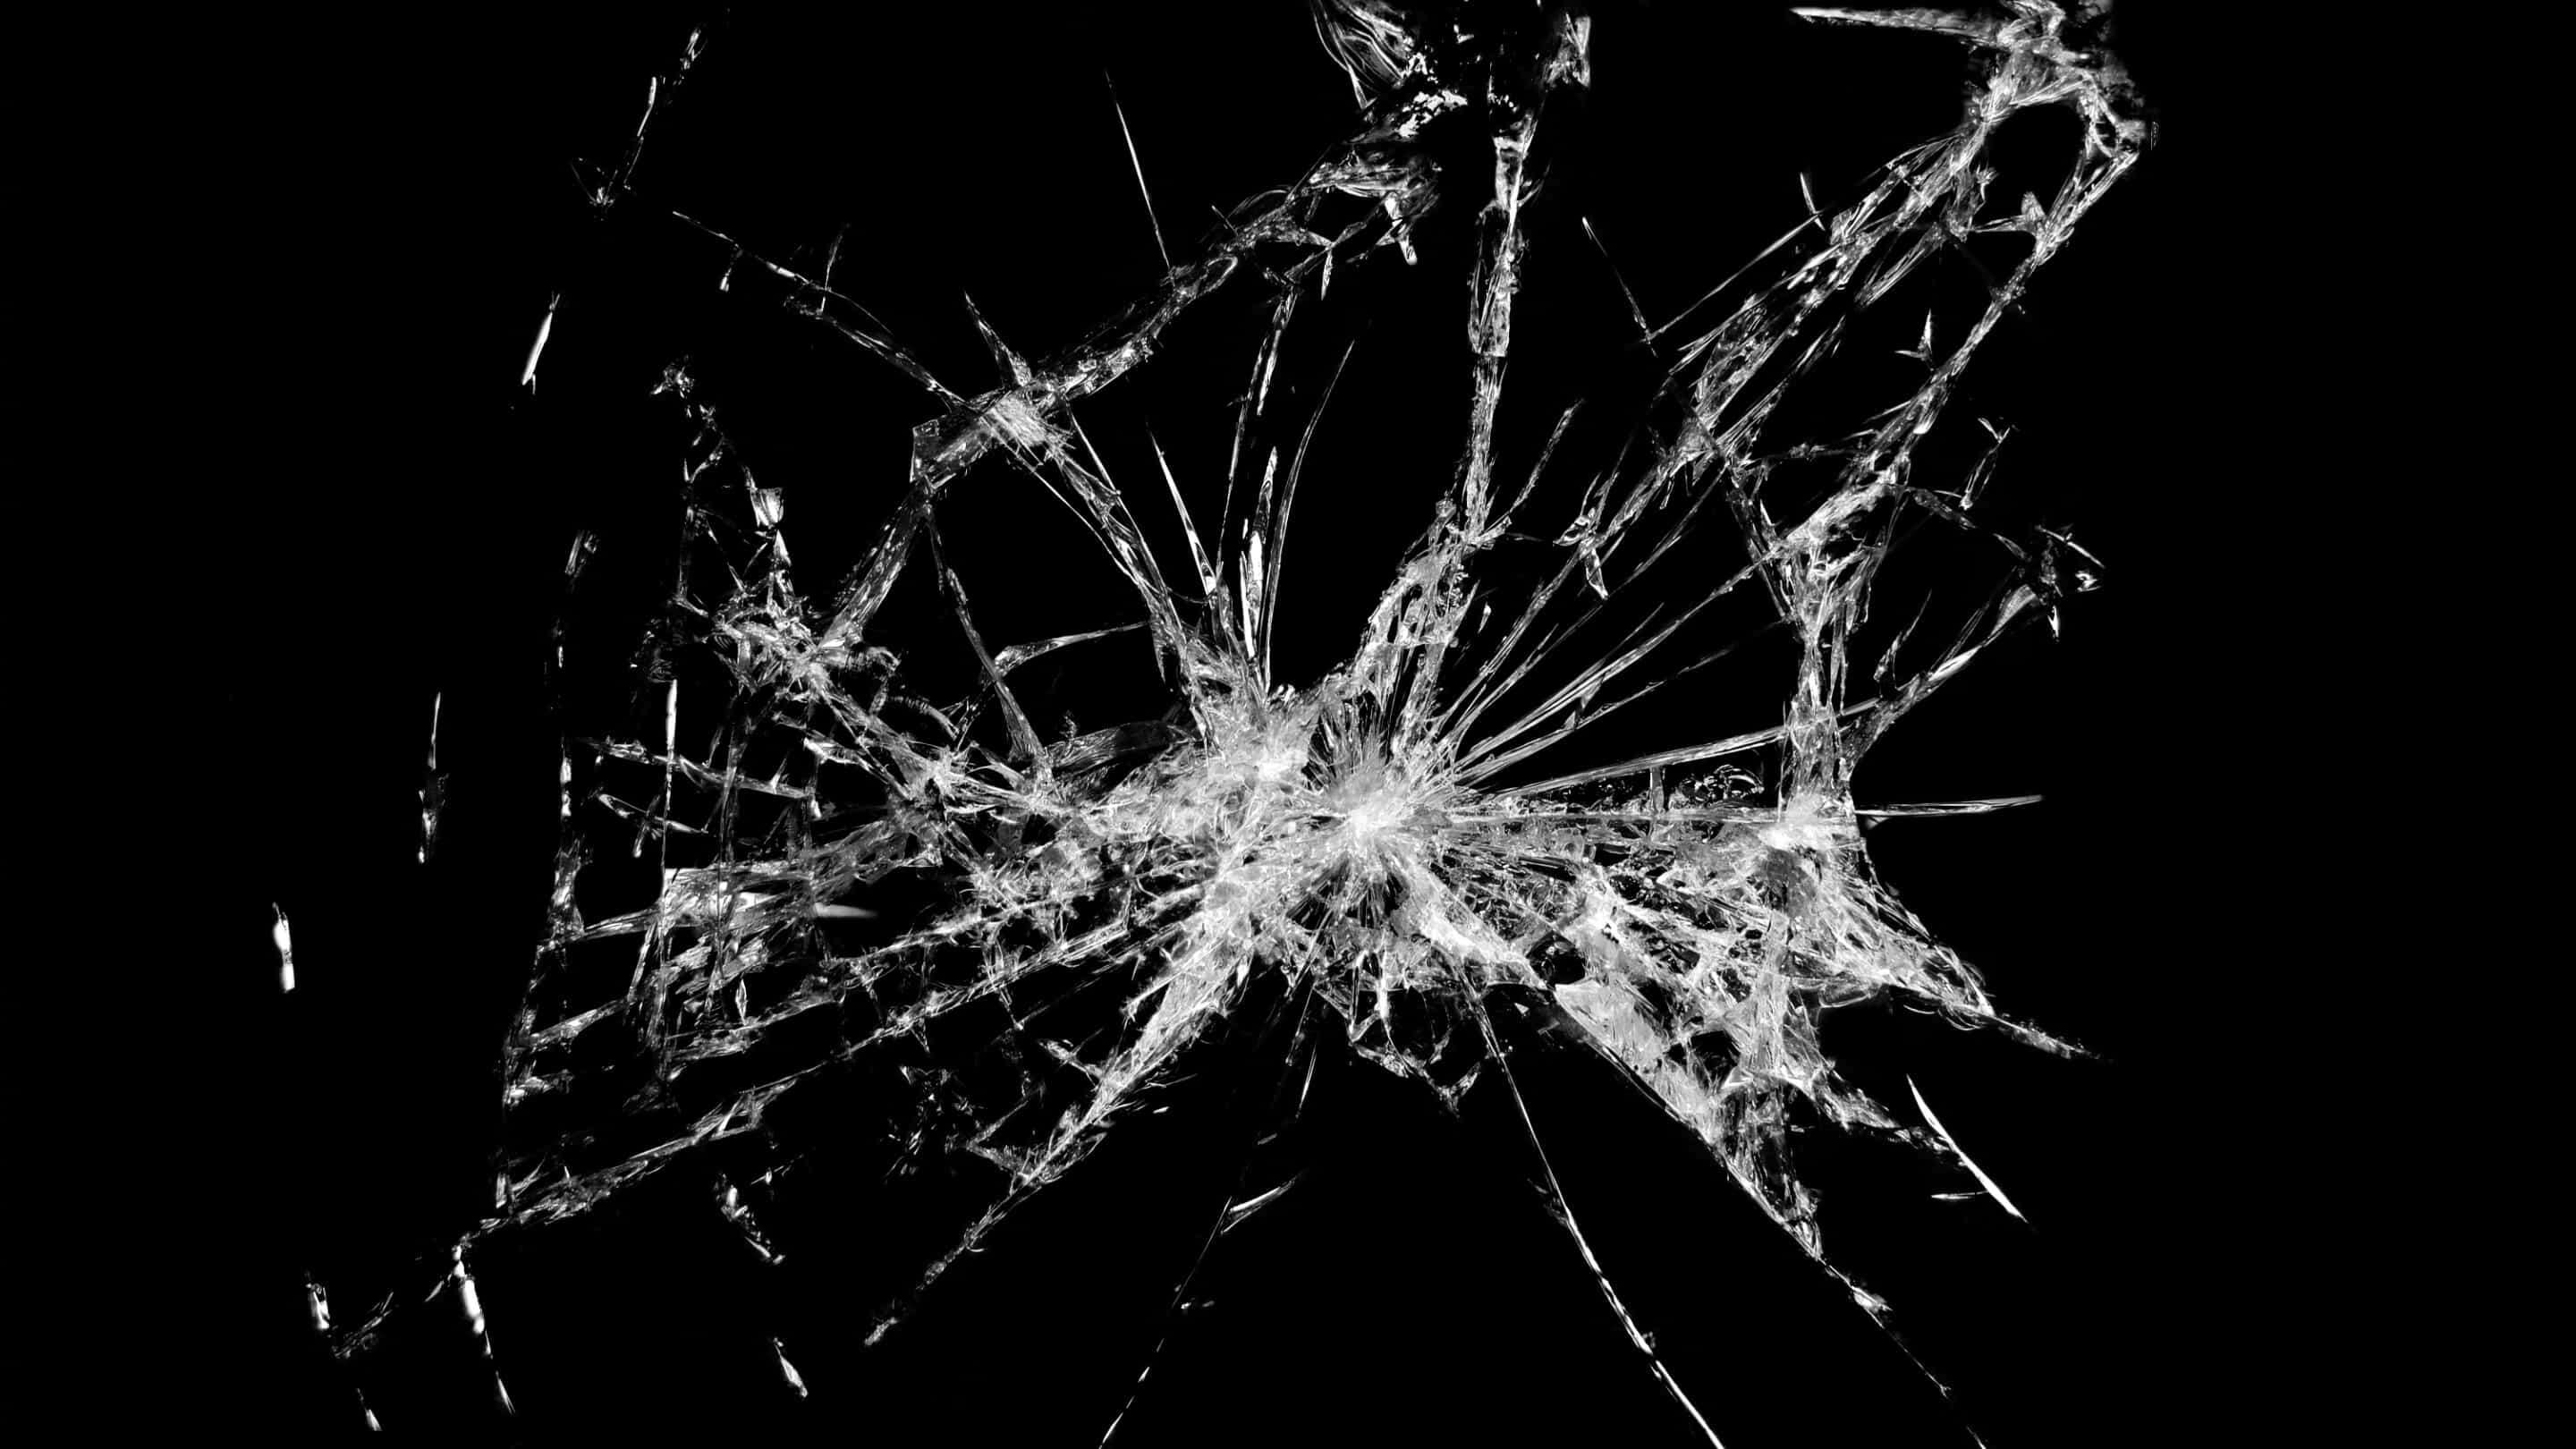 شیشه مقاومت در برابر ضربه - نورمن شیشه ای مقاومت در برابر شوک شیشه ای شکسته با بسیاری از ترک